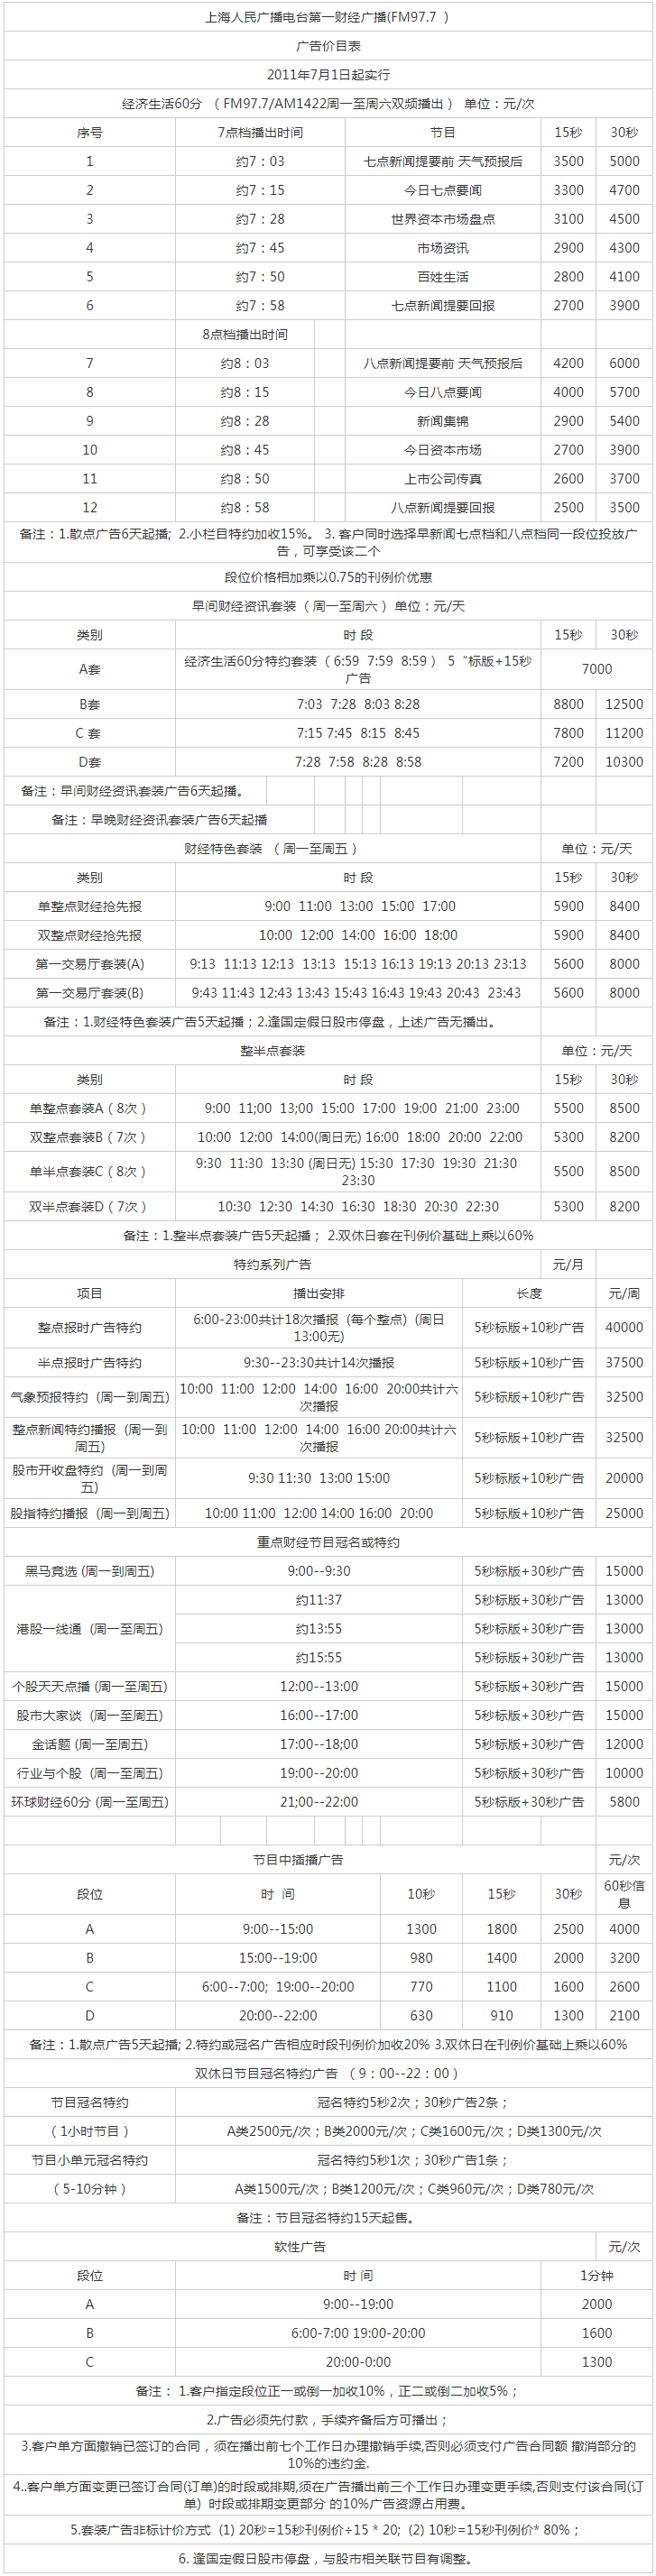 2011上海人民广播电台第一财经 AM1422_FM97.7广告报价表.png